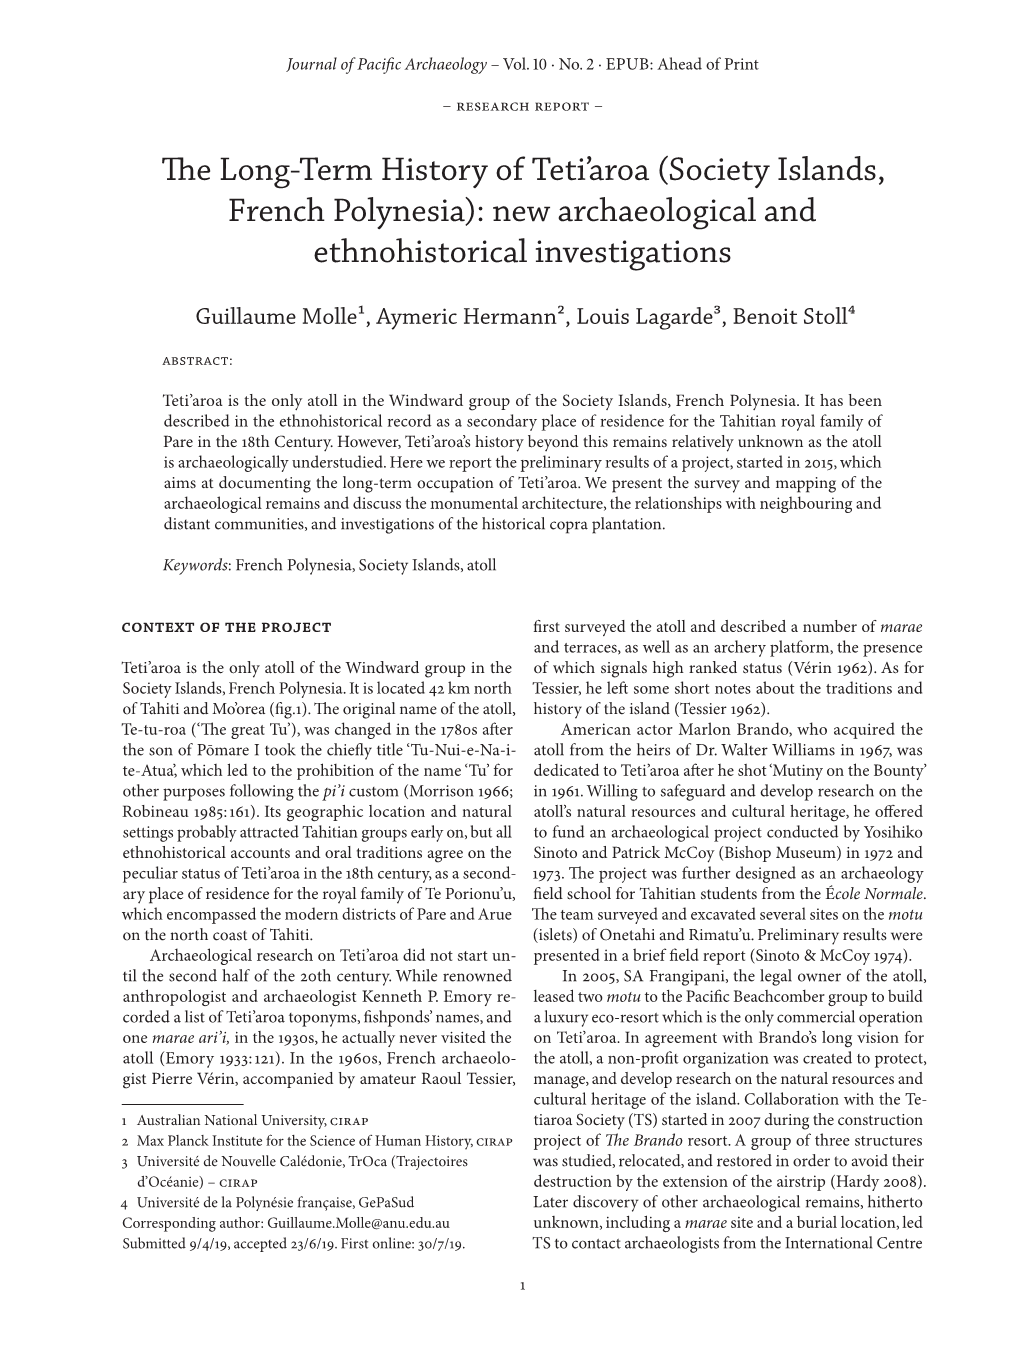 The Long-Term History of Teti'aroa (Society Islands, French Polynesia